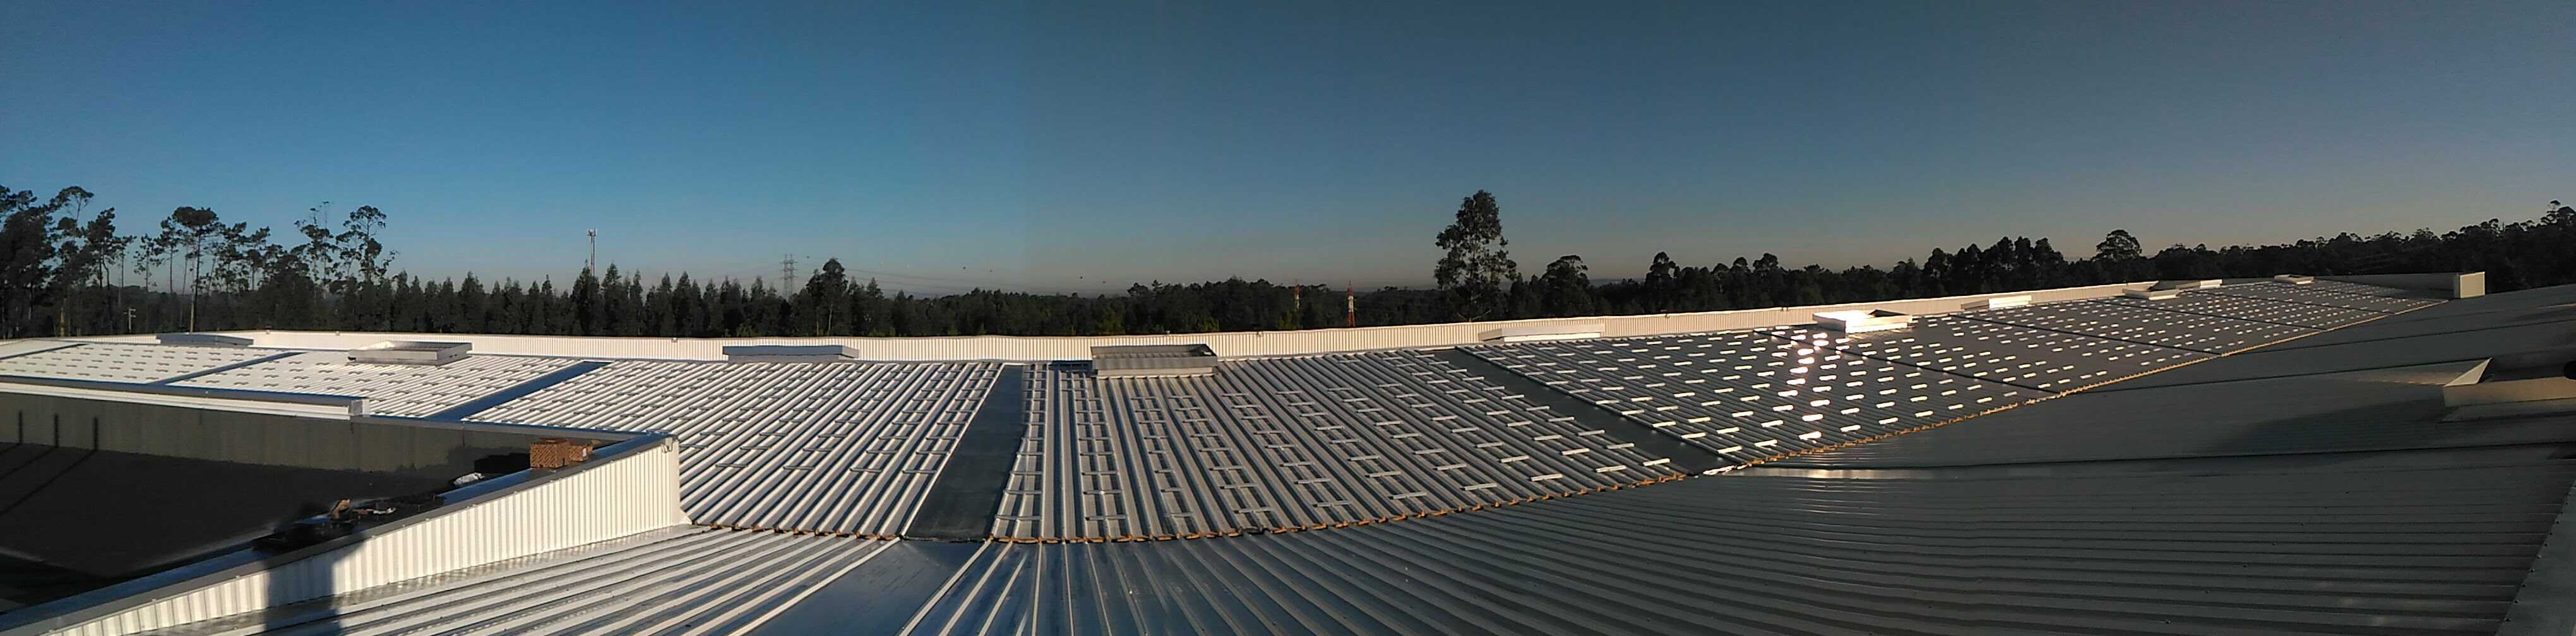 DEXPROM Campo solar (fase obra)